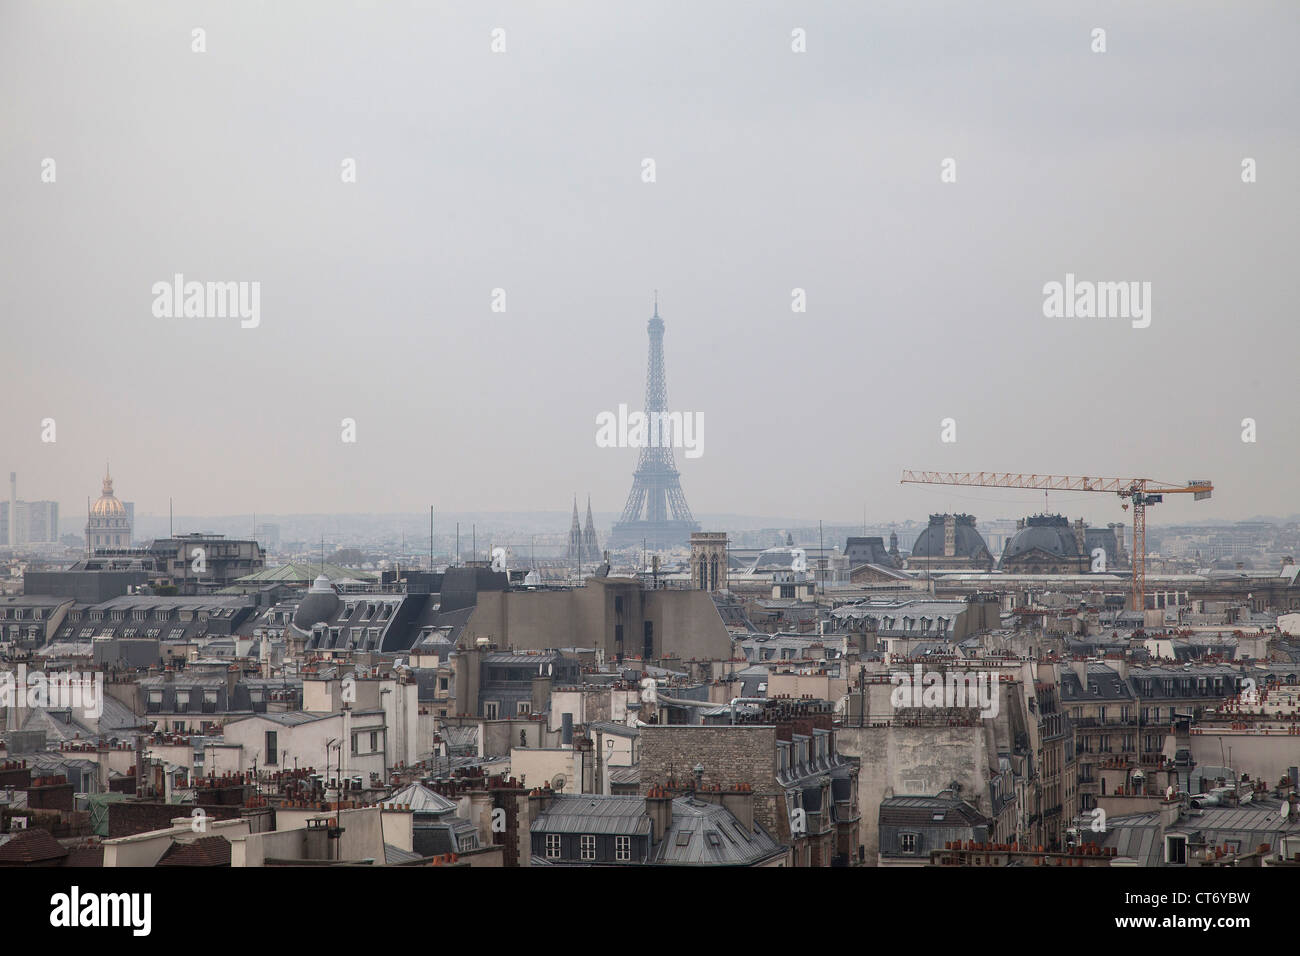 Centre Pompidou, Paris, France Stock Photo